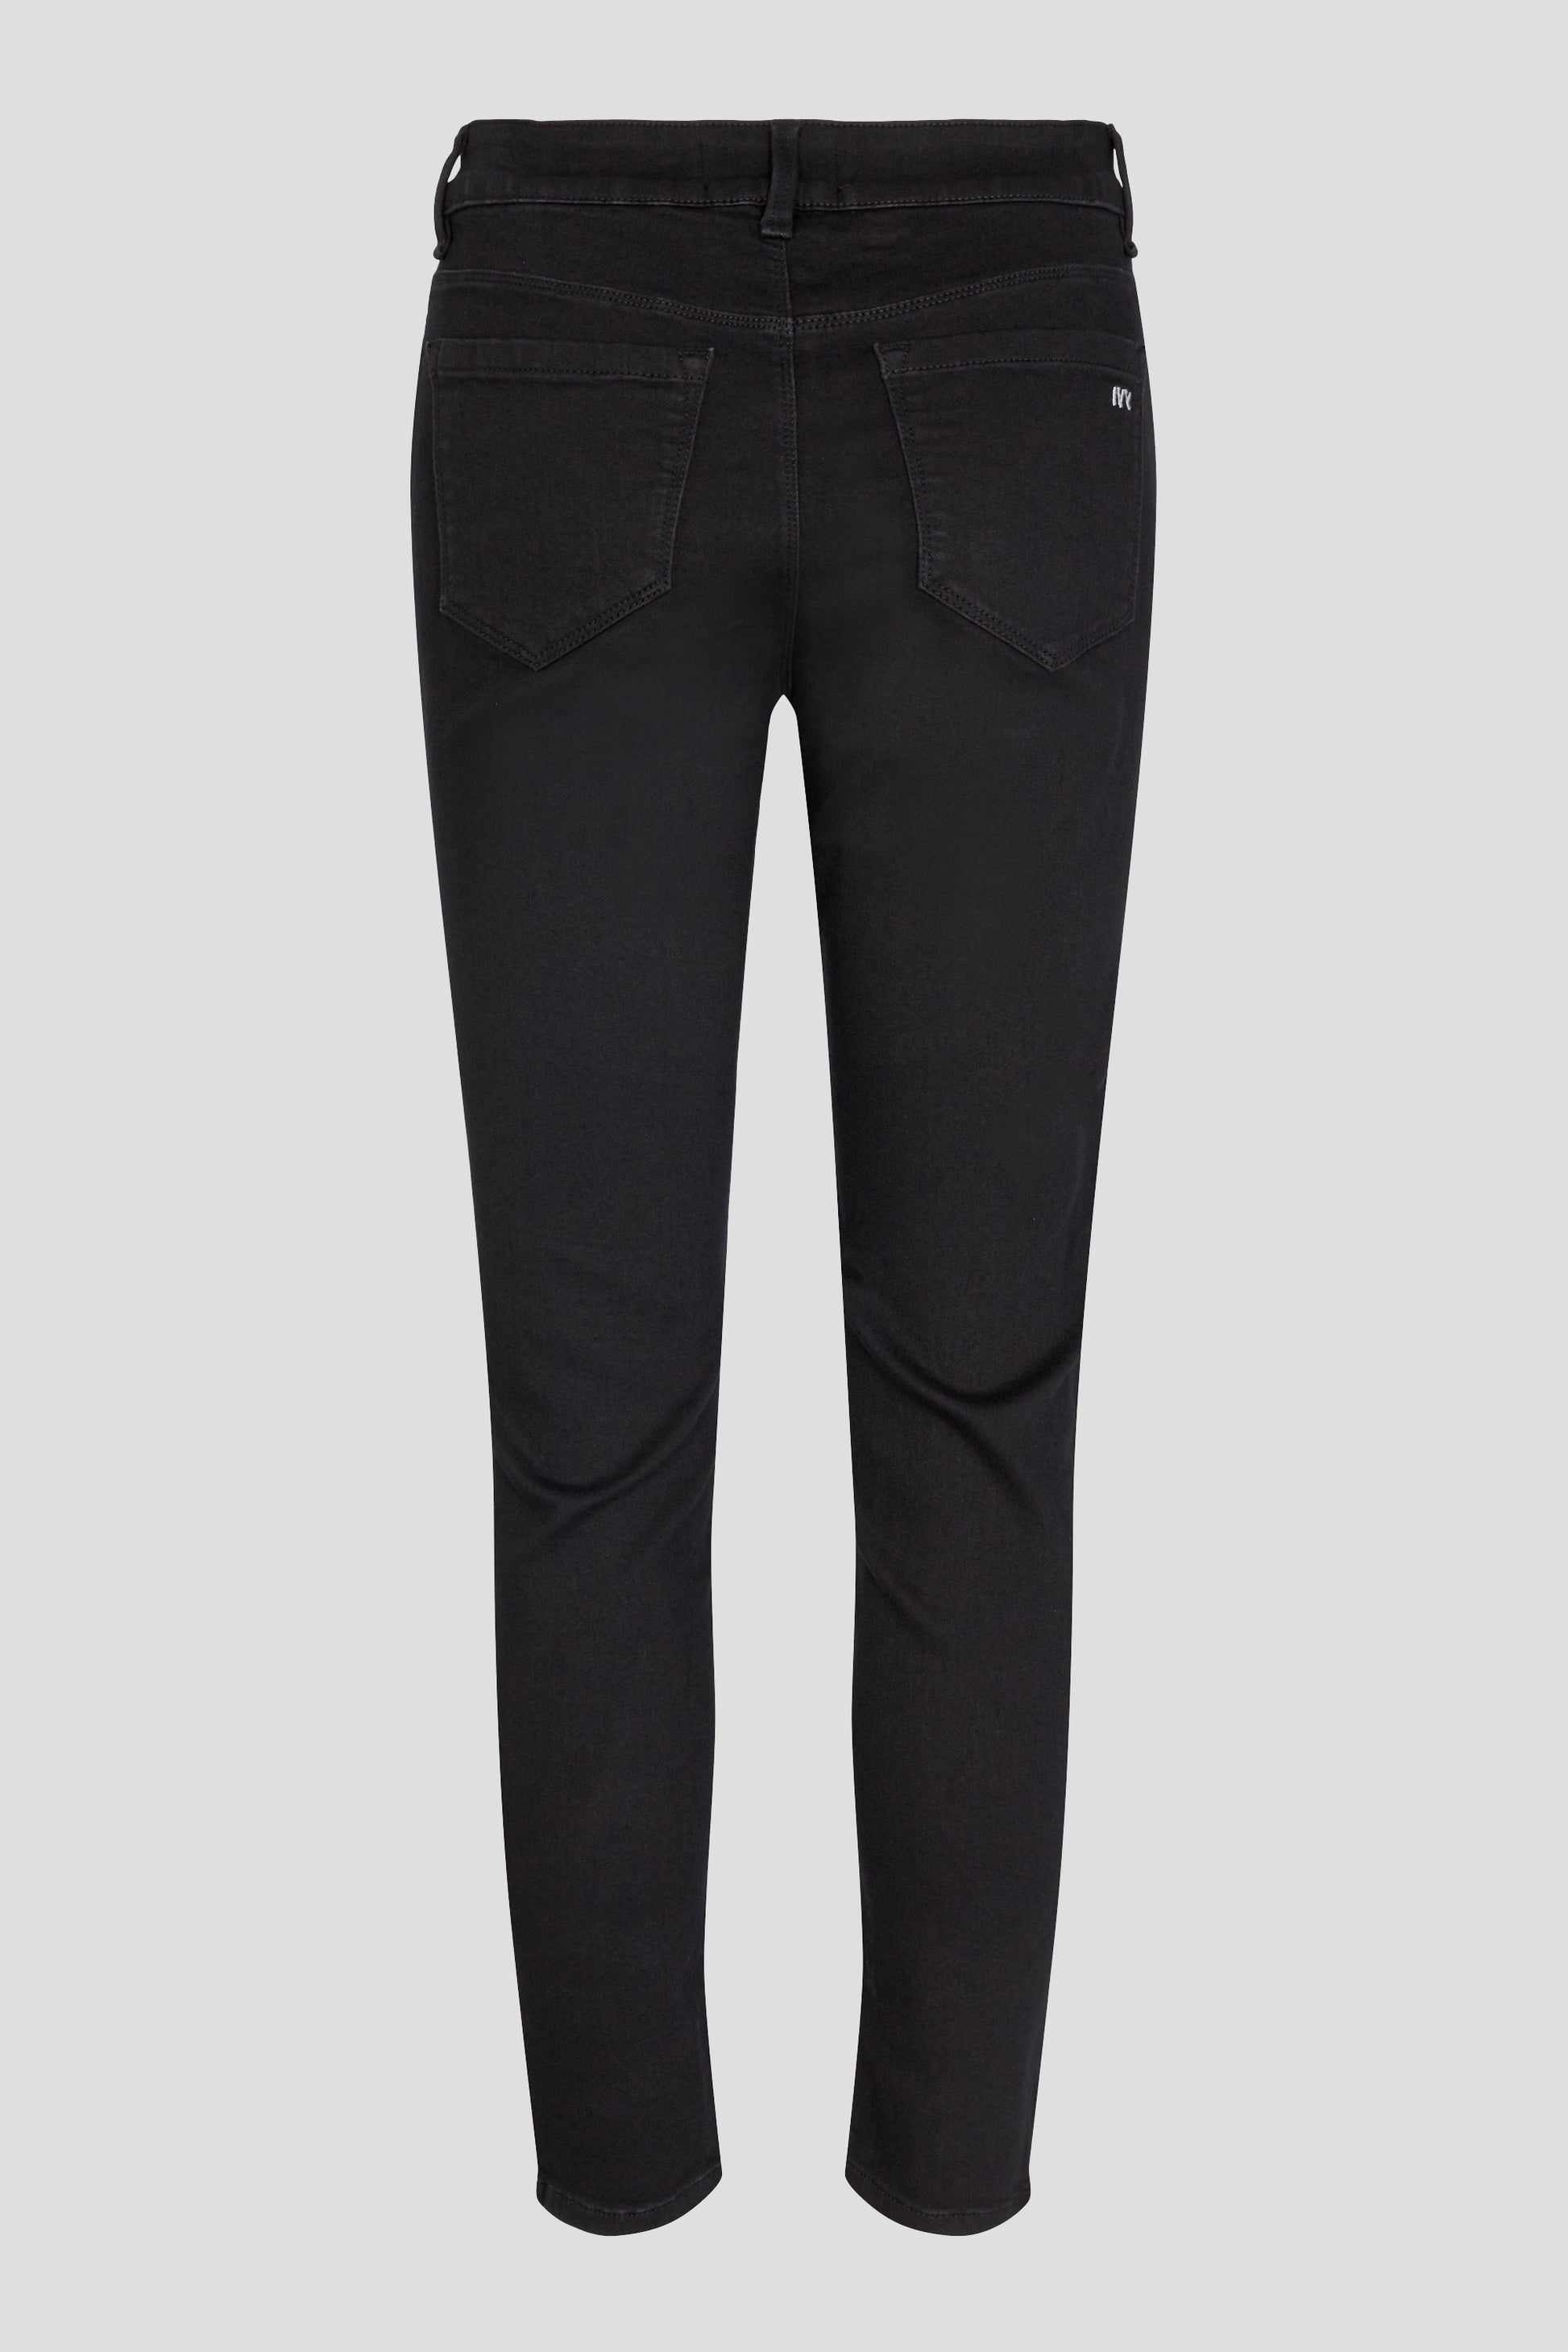 IVY Copenhagen IVY-Alexa Jeans Cool Excellent Black Jeans & Pants